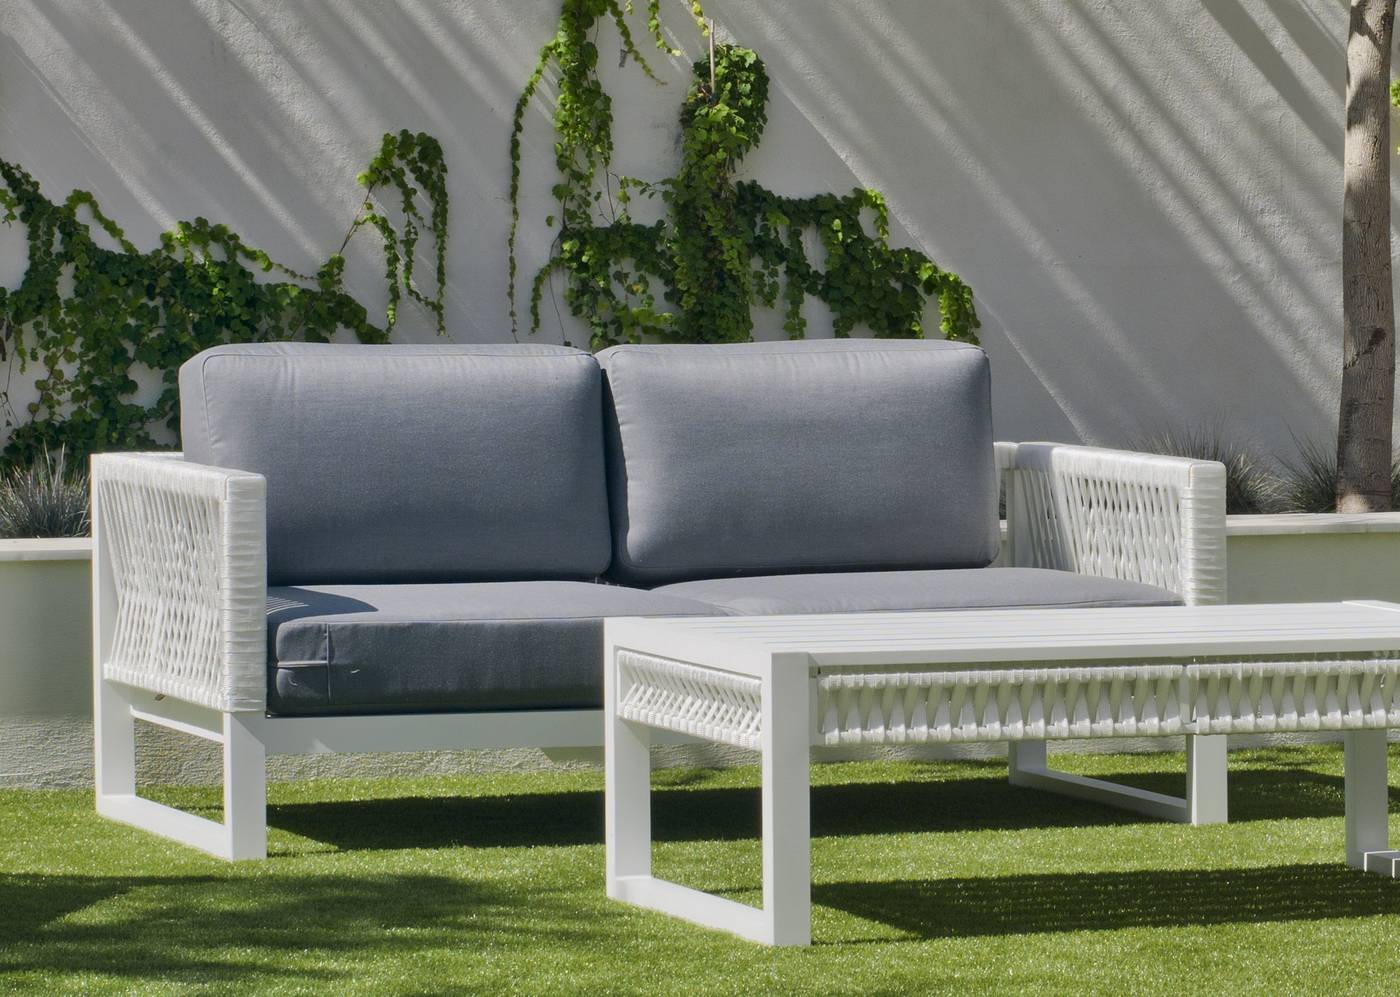 Sofá relax 2 plazas gran lujo, con cojines desenfundables. Fabricado de aluminio y cuerda. Colores: blanco, gris, marrón o champagne.